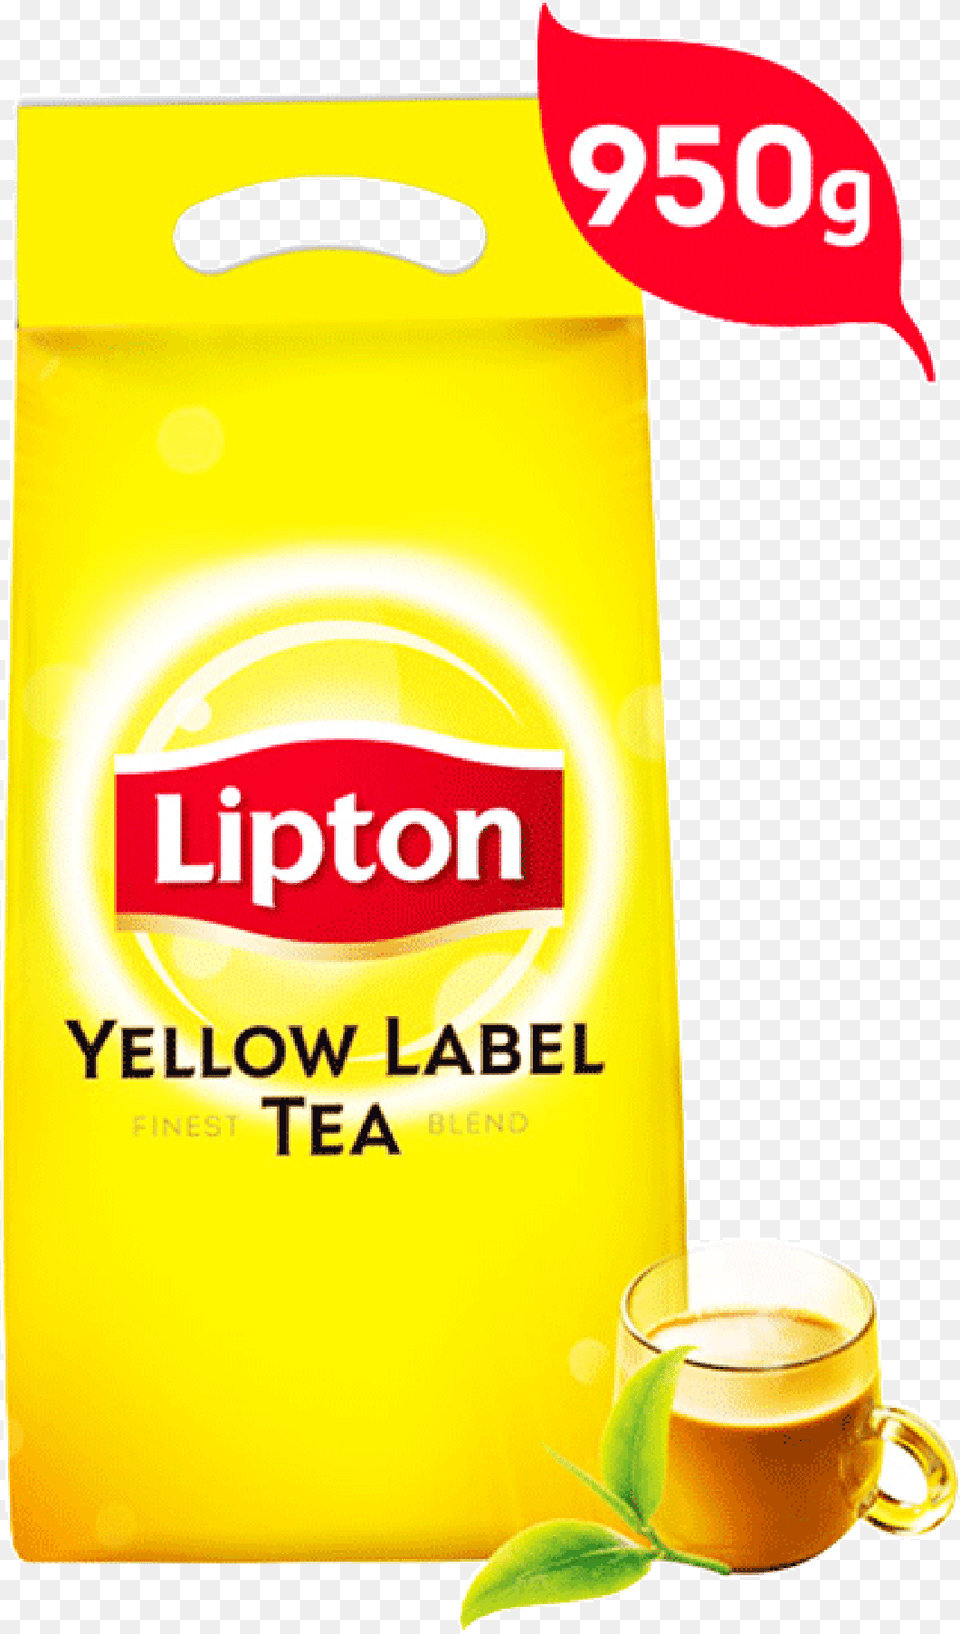 Lipton Yellow Label Tea Pouch 950 Gm Lipton Tea 950gm, Beverage, Cup Png